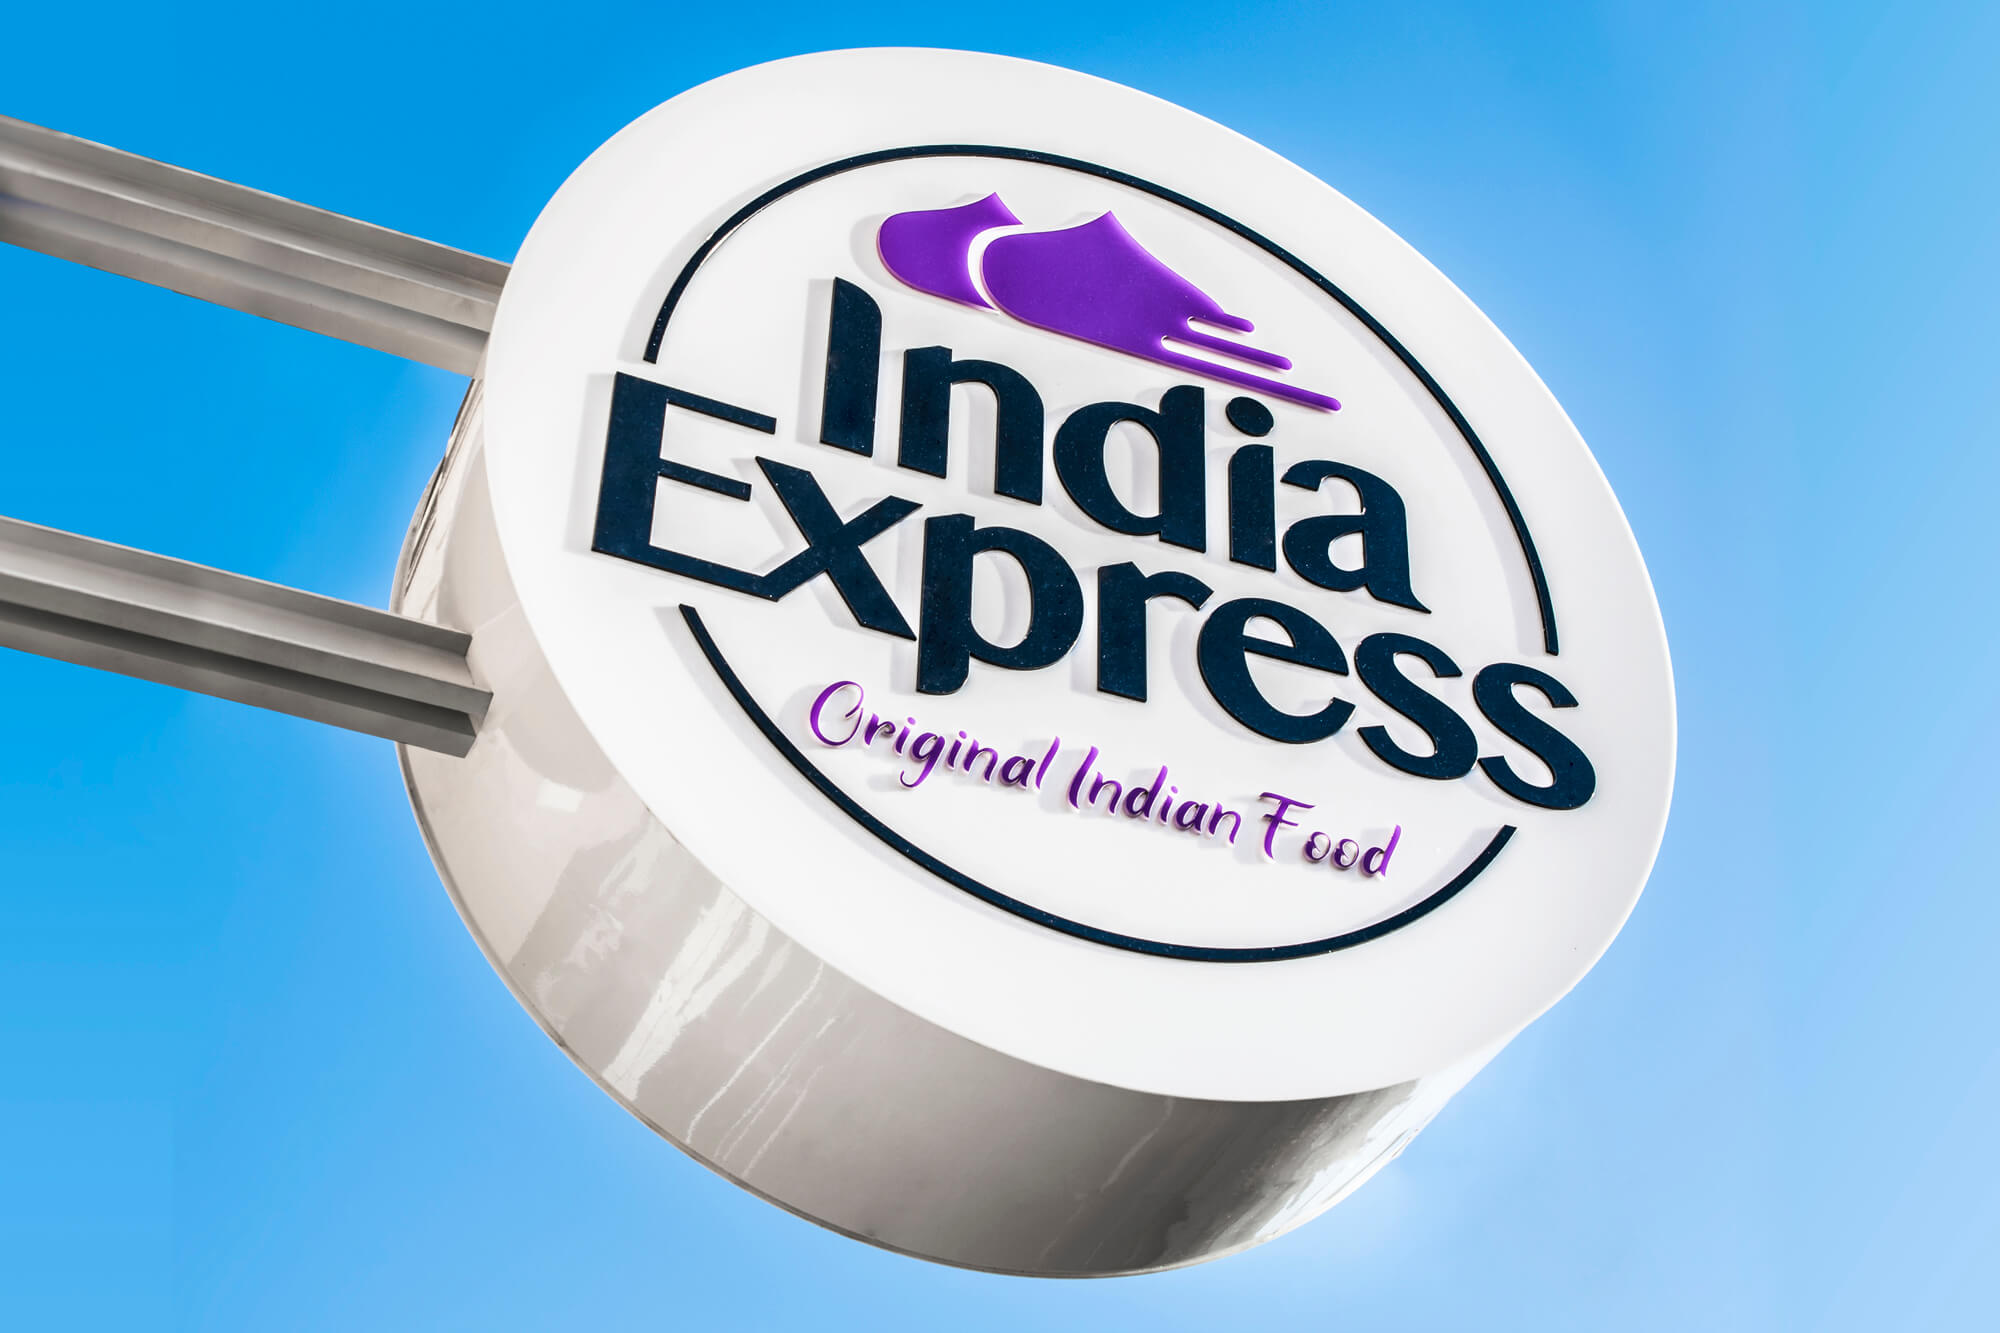 India Express - India Express - sémaphore publicitaire avec le logo de la société accroché à côté de l'entrée.